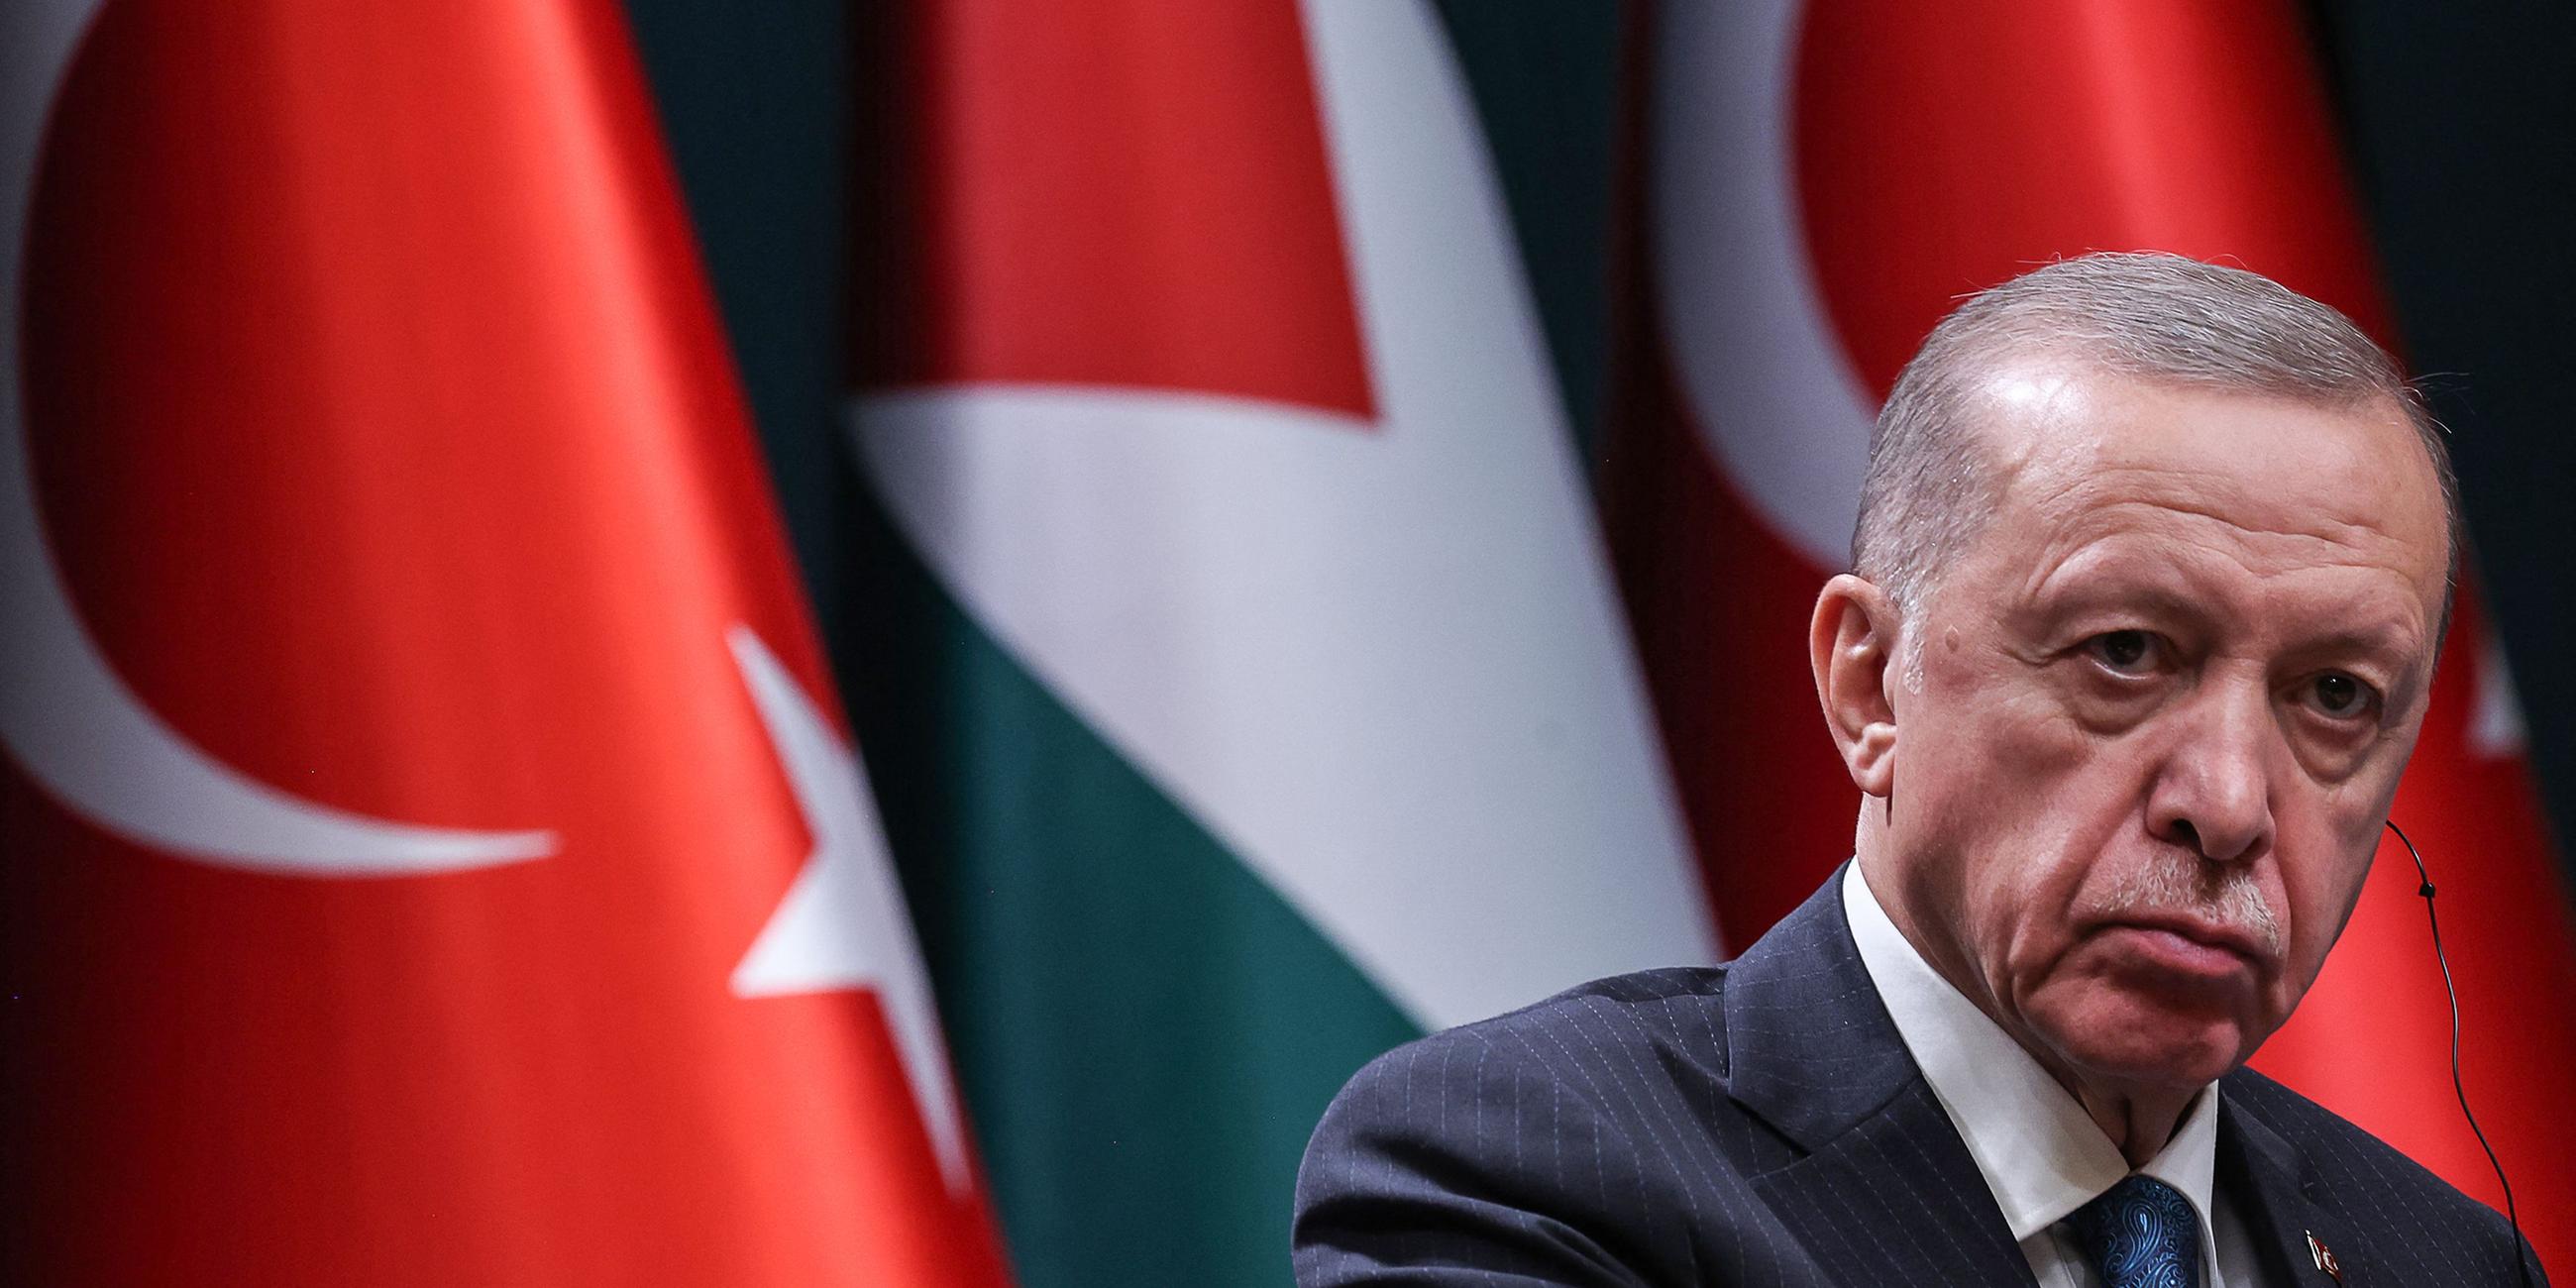 Der türkische Präsident Recep Tayyip Erdogan bei einer Pressekonferenz.